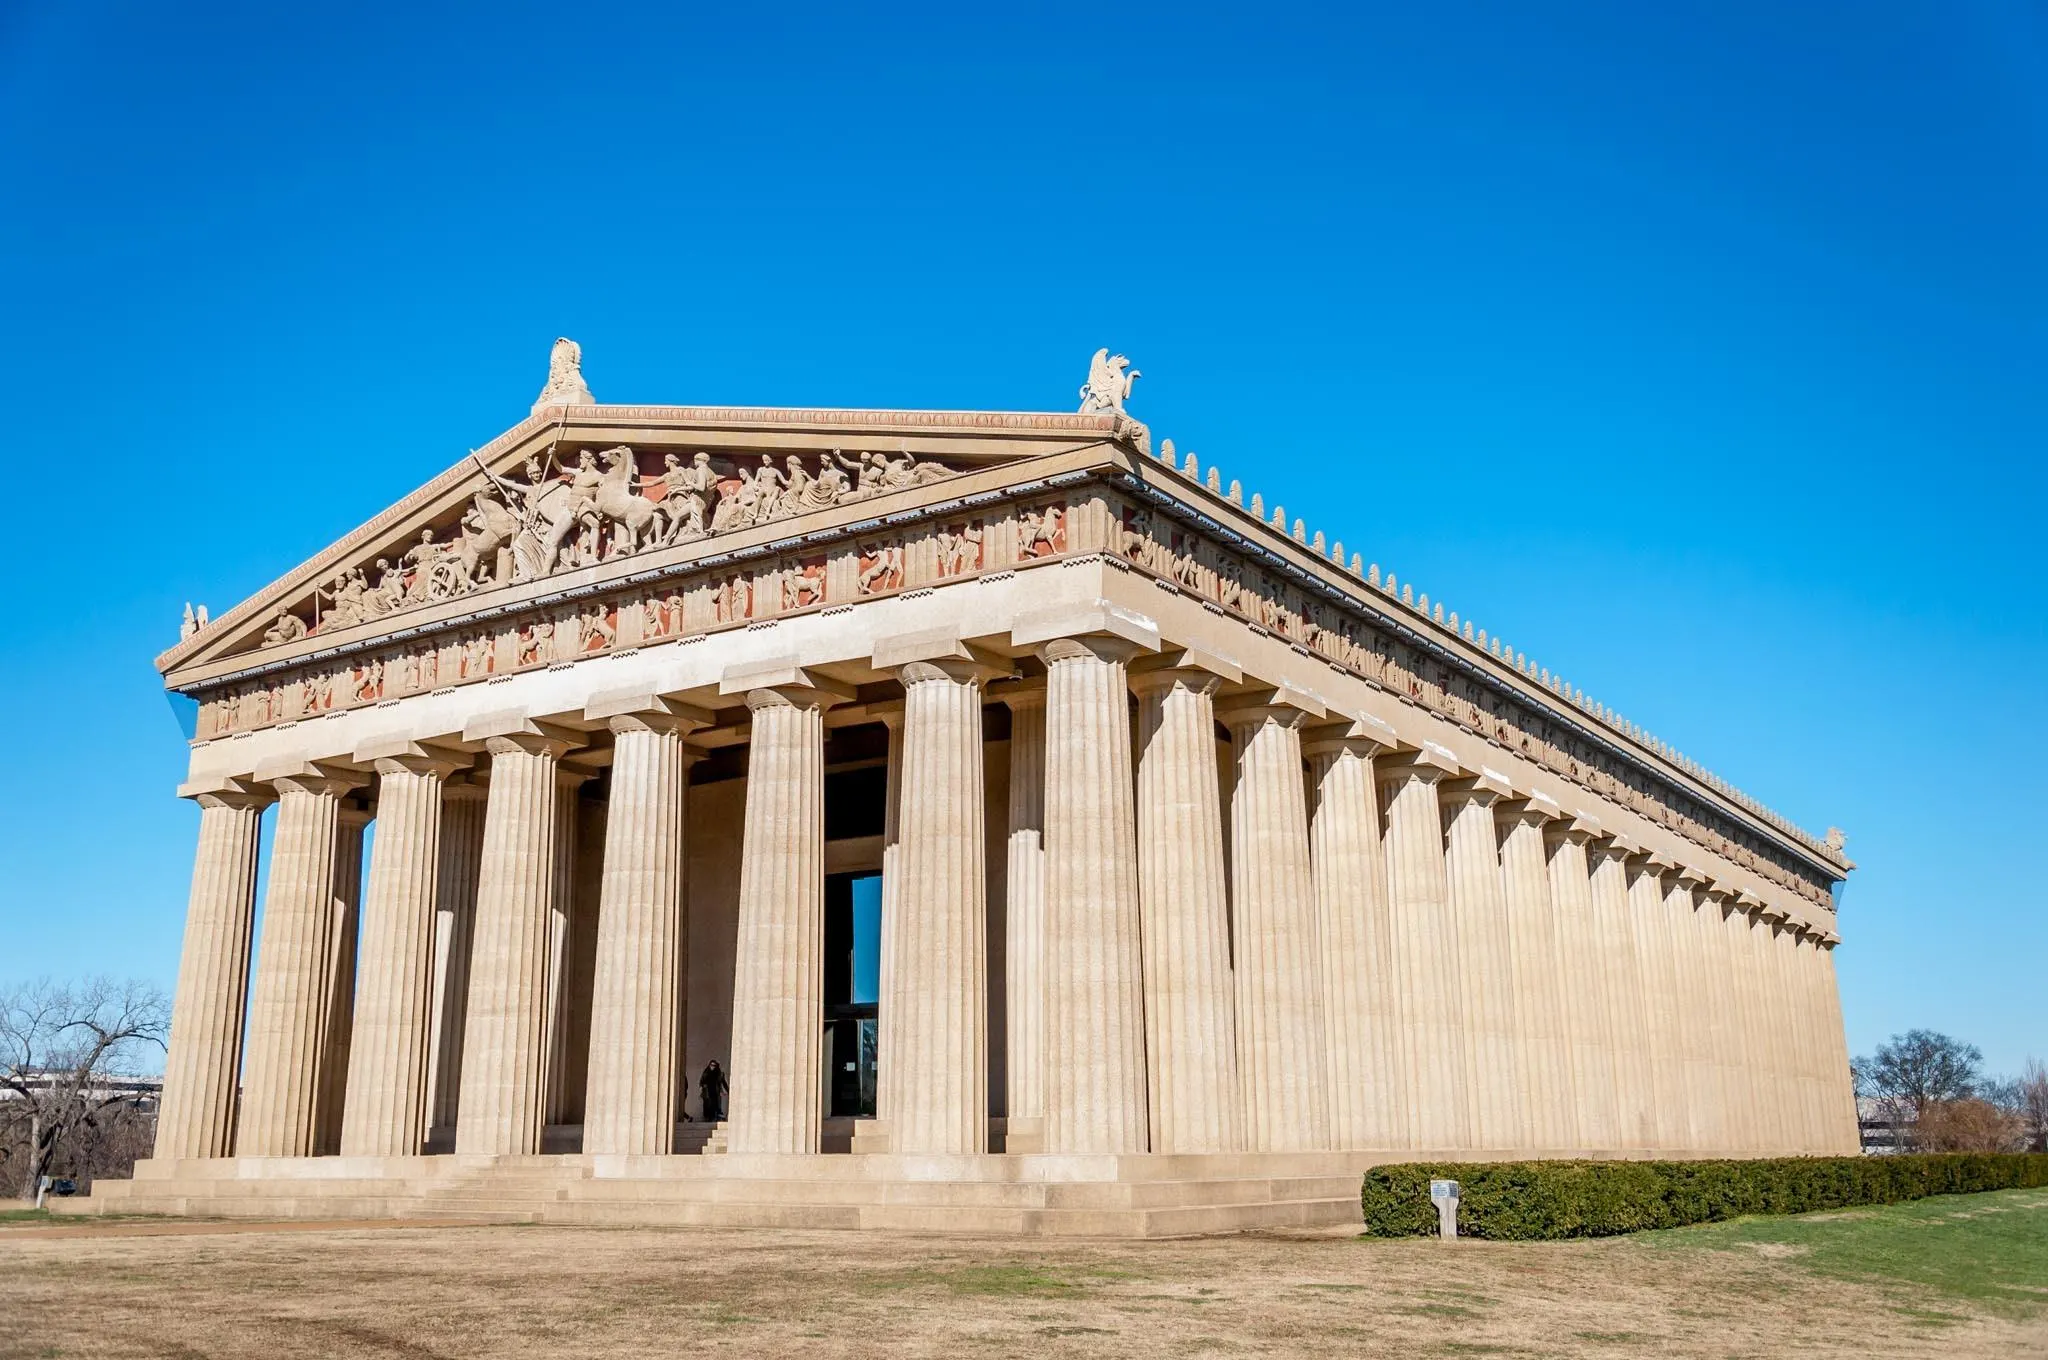 Full-scale replica of the Parthenon in Nashville TN.